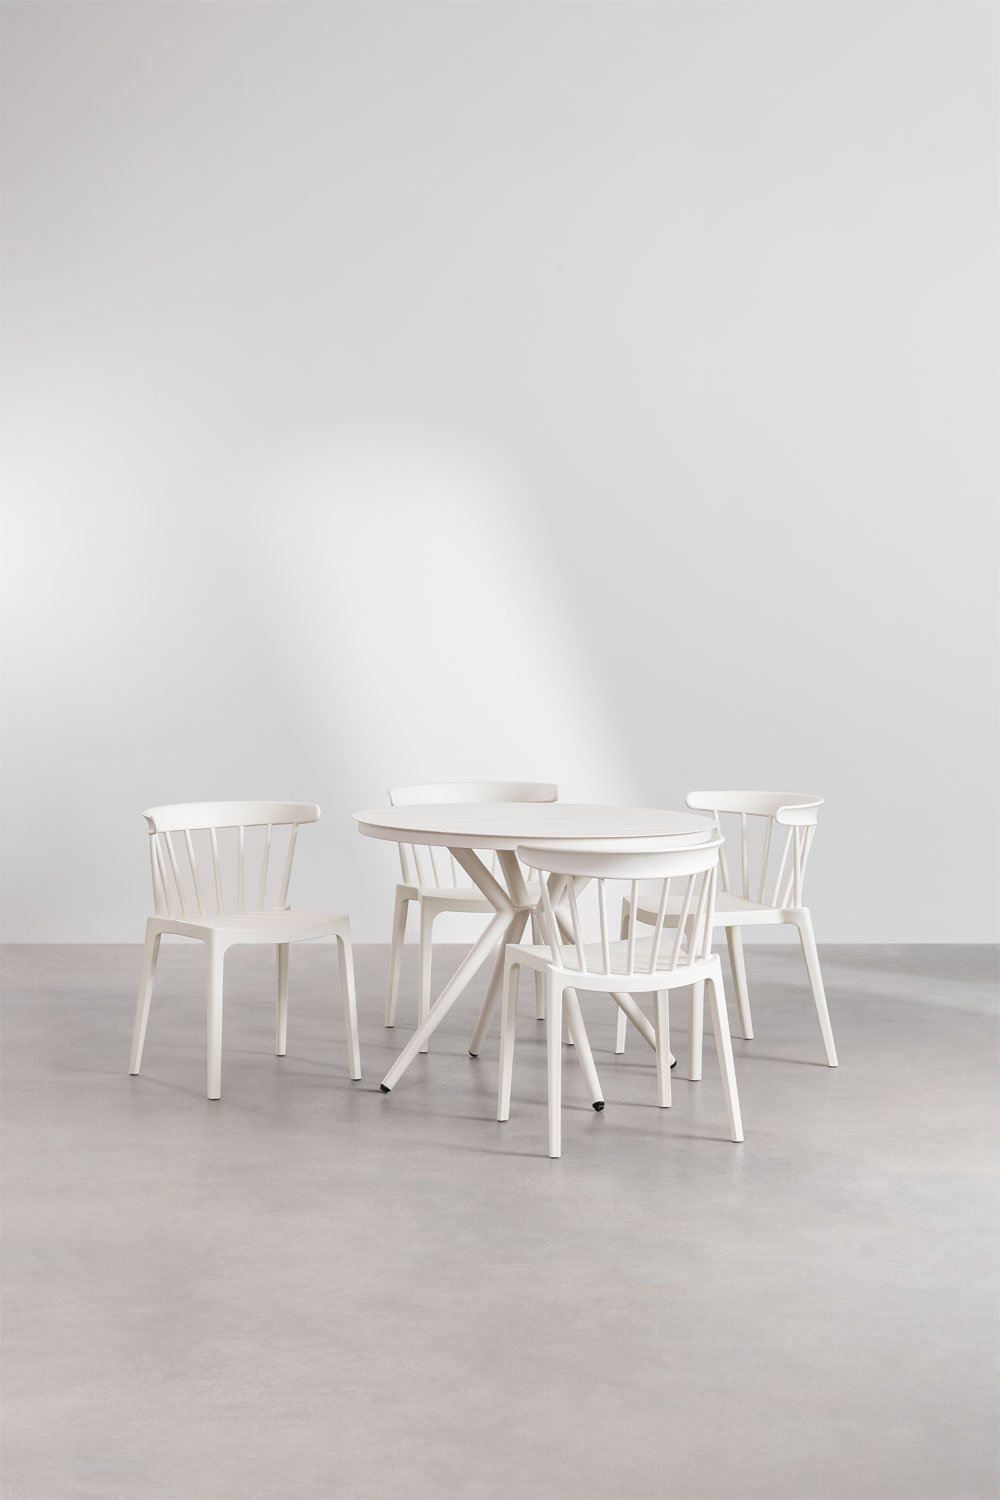 Zestaw okrągłego stołu aluminiowego Valerie (Ř100 cm) i 4 krzesła ogrodowe Aldora, obrazek w galerii 1